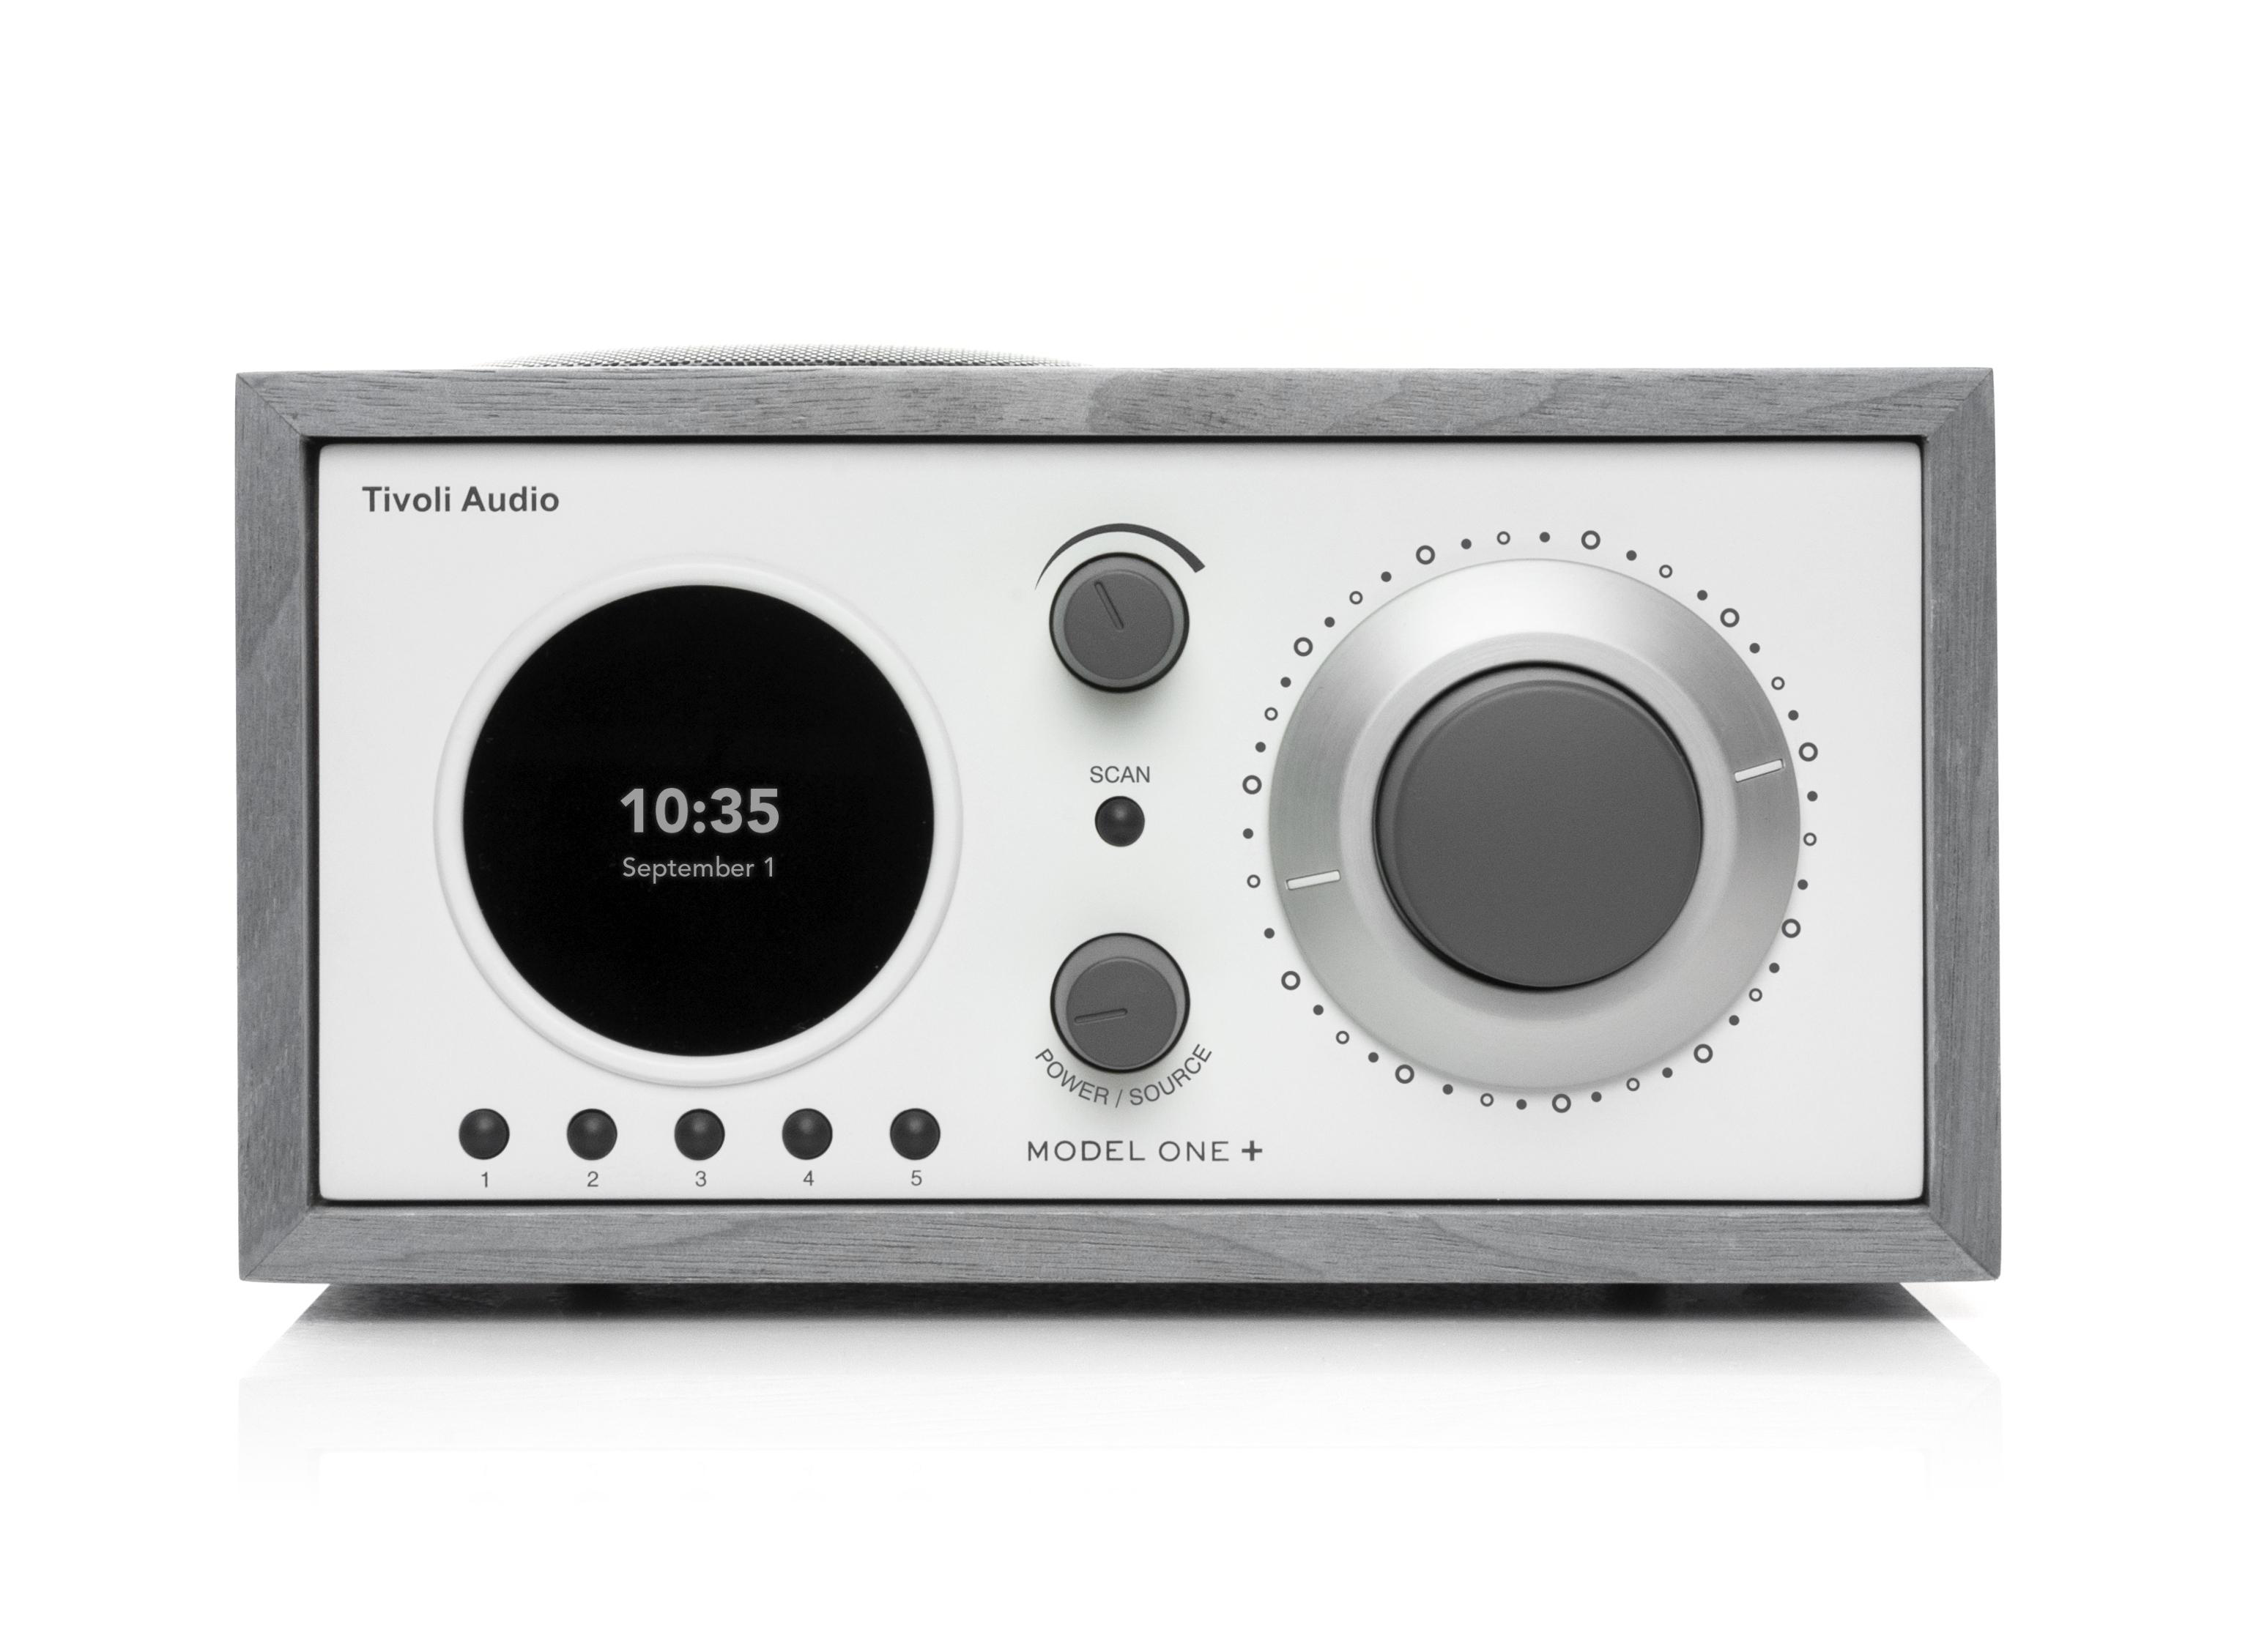 TIVOLI AUDIO Model One+ DAB-Radio, DAB+, FM, Grau/Weiss DAB, Bluetooth